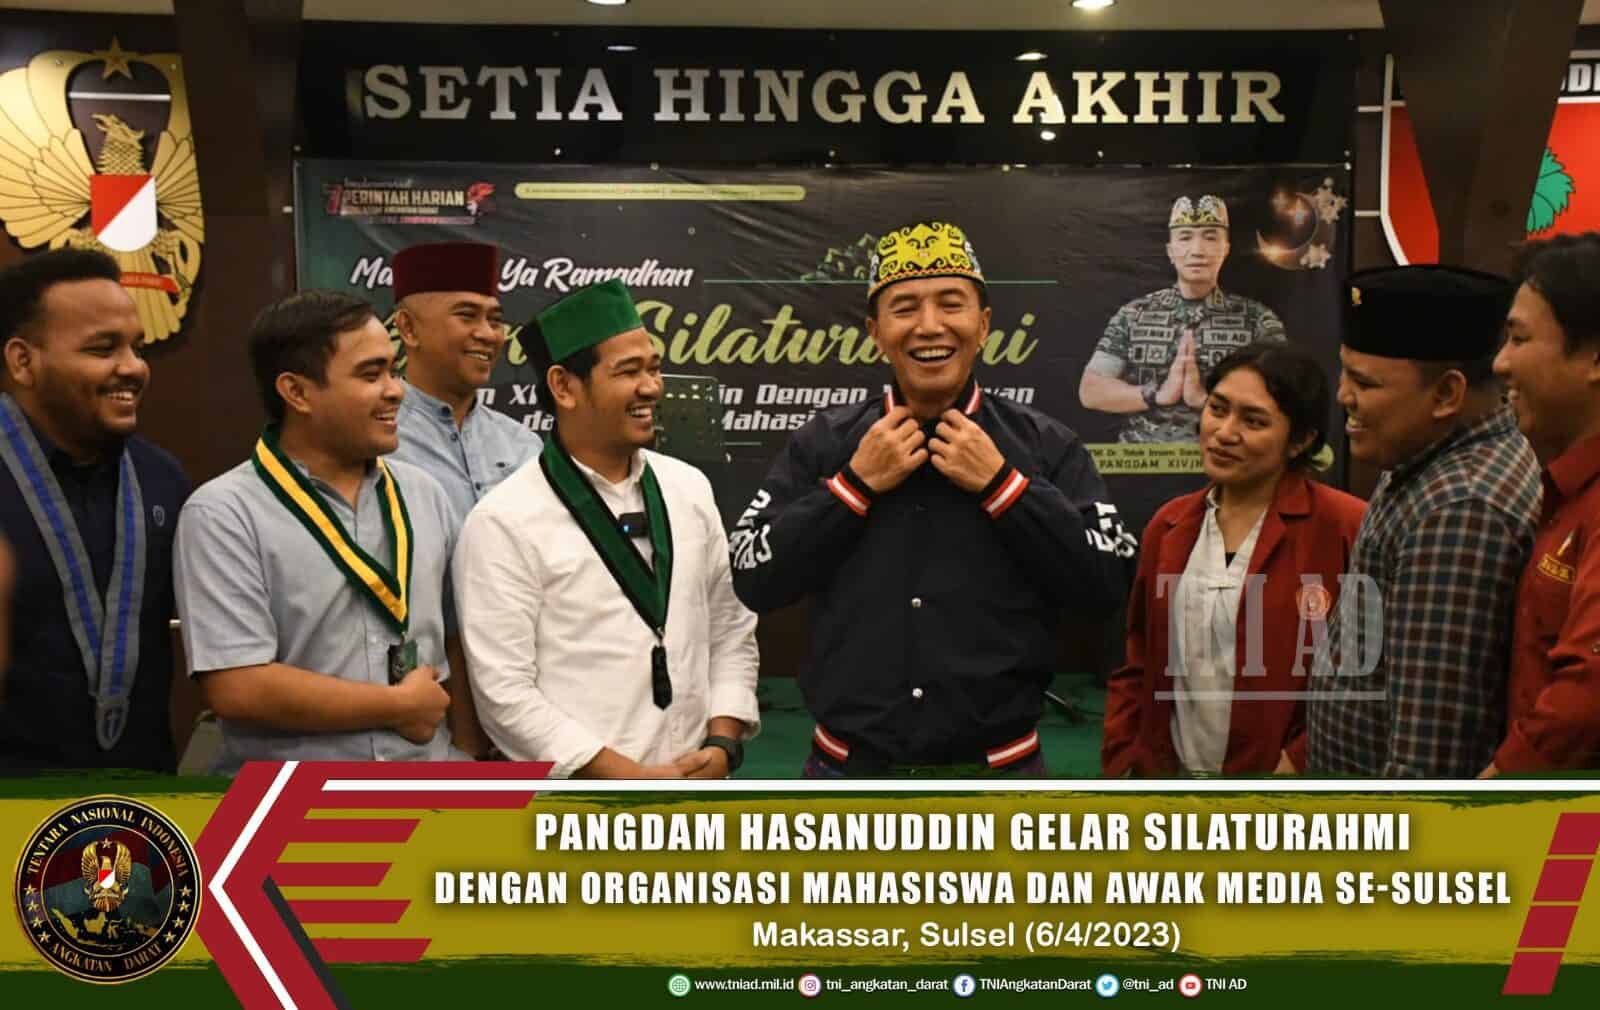 Pangdam Hasanuddin Gelar Silaturahmi, Berikan Bantuan Lebaran dan Sholat Berjamaah dengan Organisasi Mahasiswa dan Awak Media Se-Sulsel